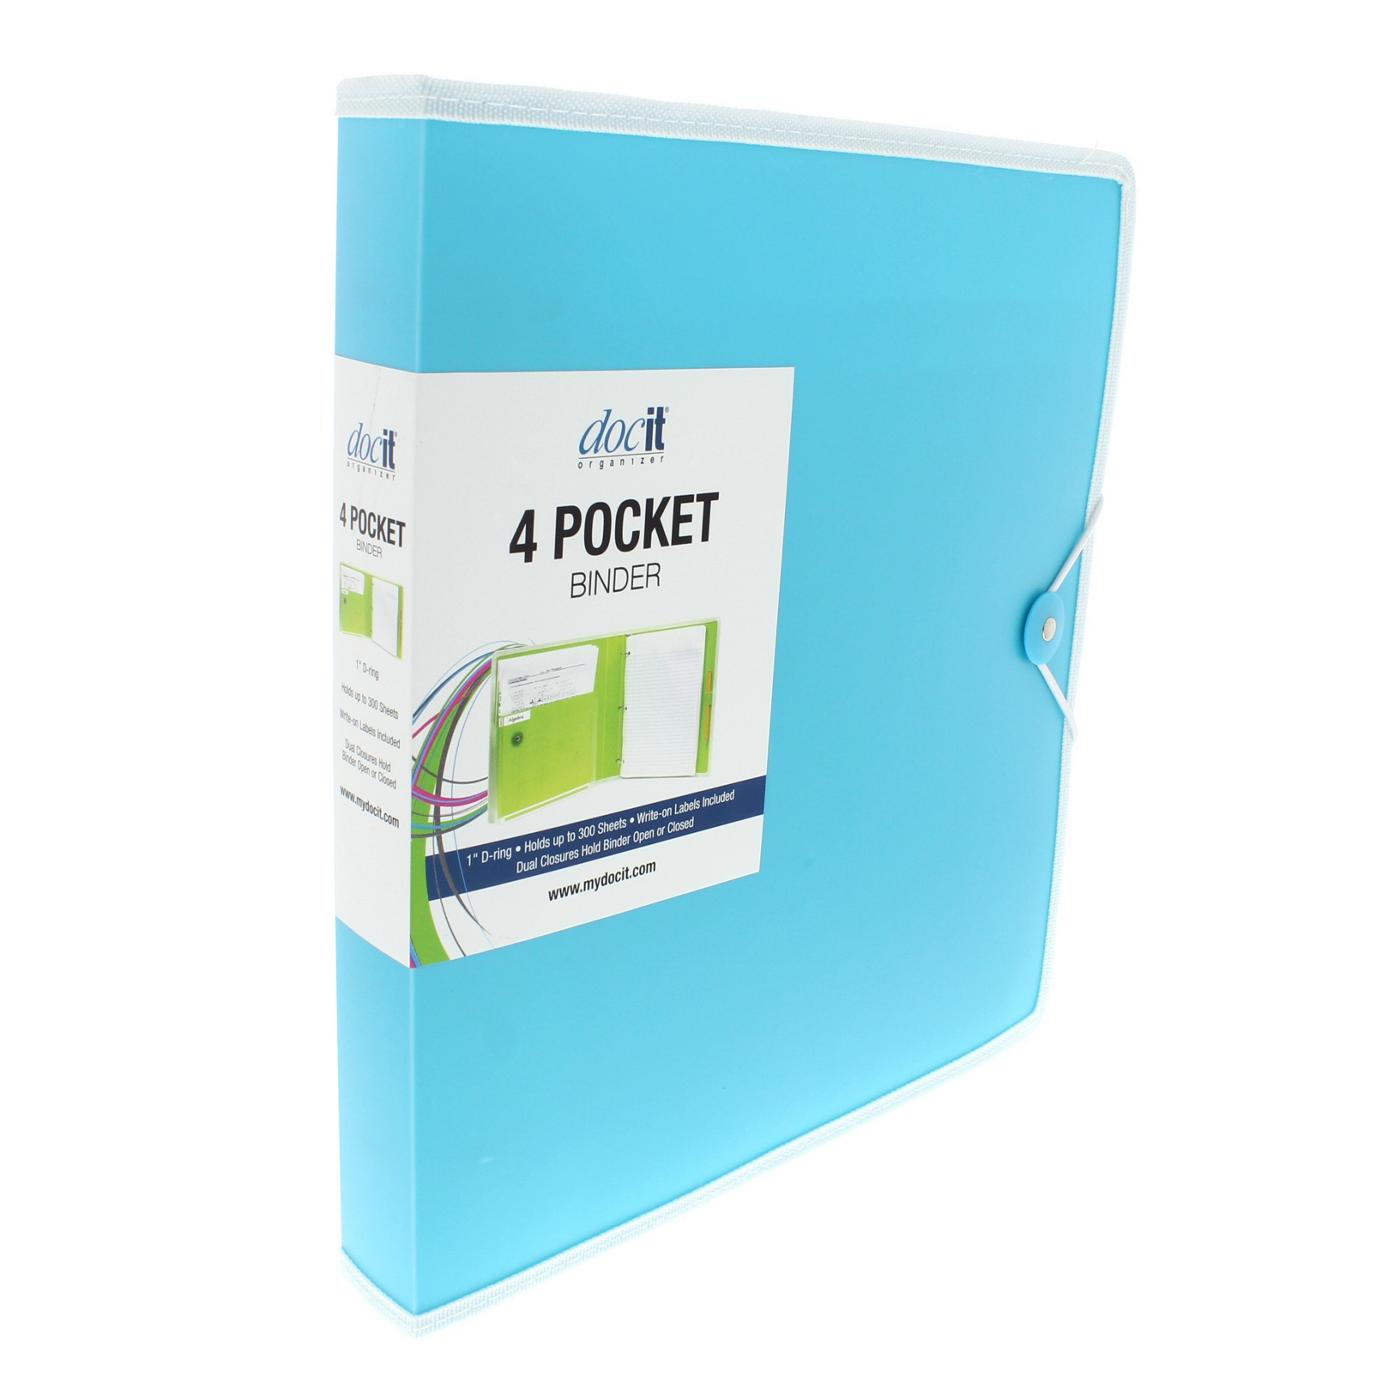 DocIt Organizer 4 Pocket Binder, Multi Pocket Folder And 1-Inch 3 Ring Binder; image 4 of 4